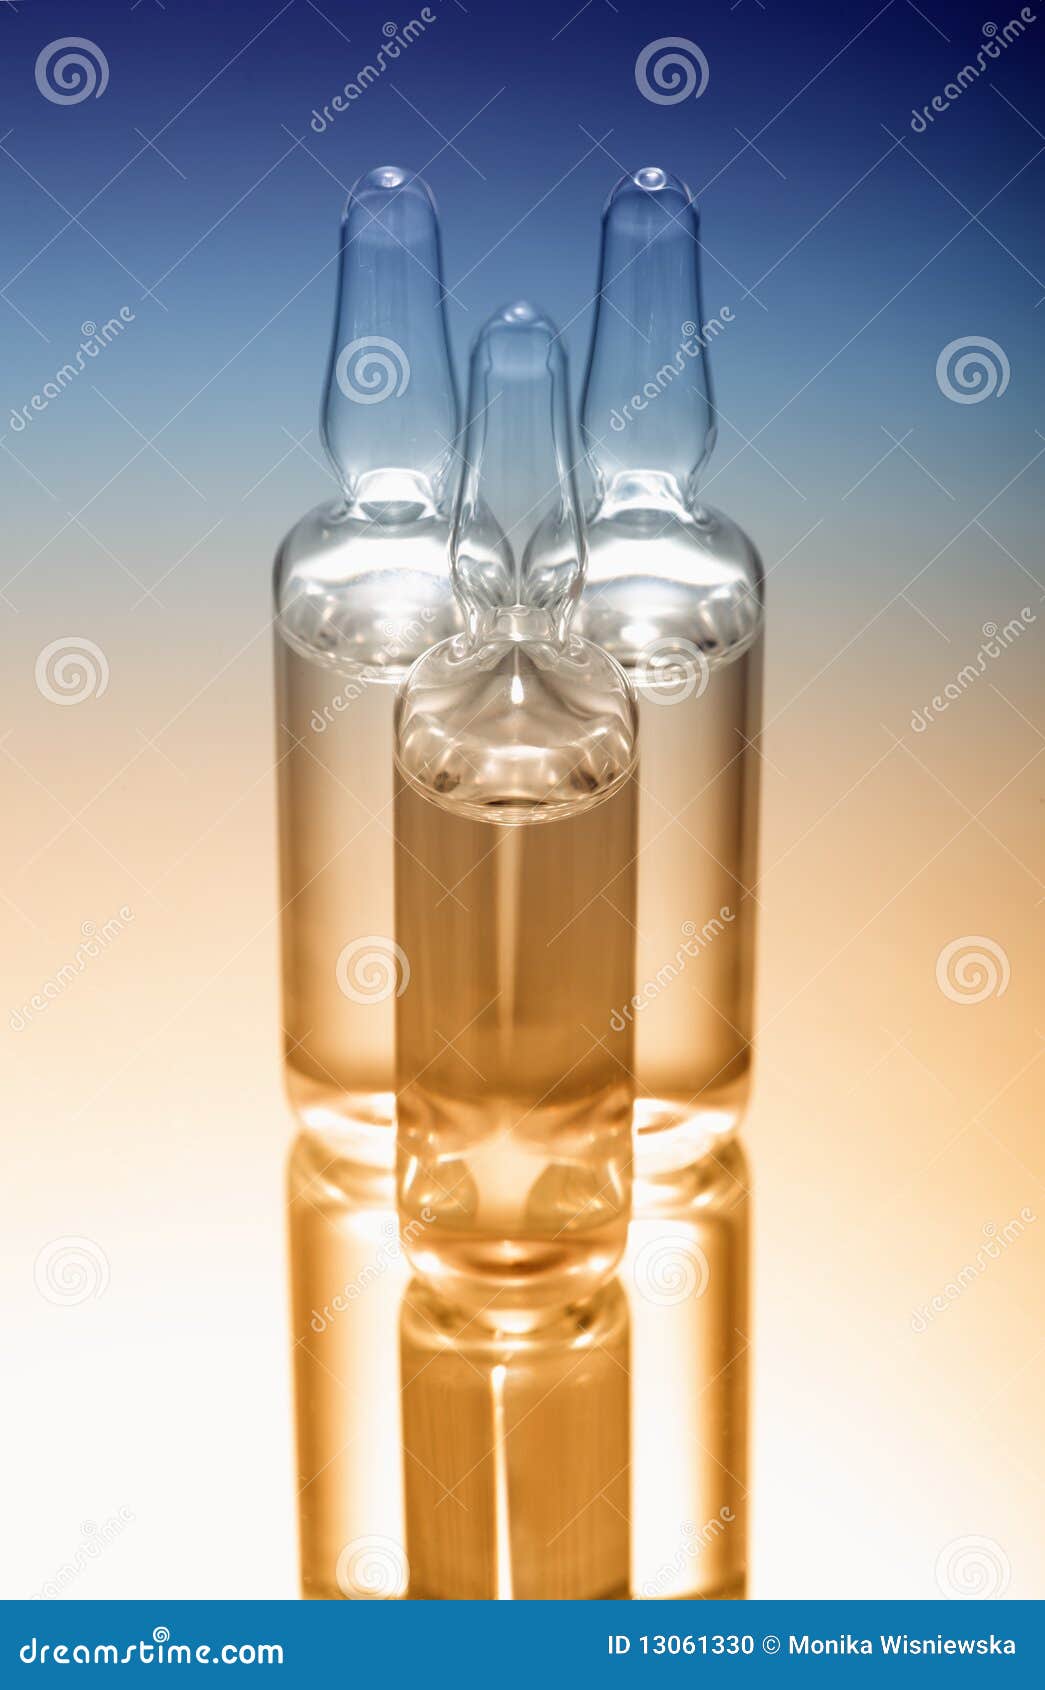 Ampolle di vetro fotografia stock. Immagine di scienza - 13061330